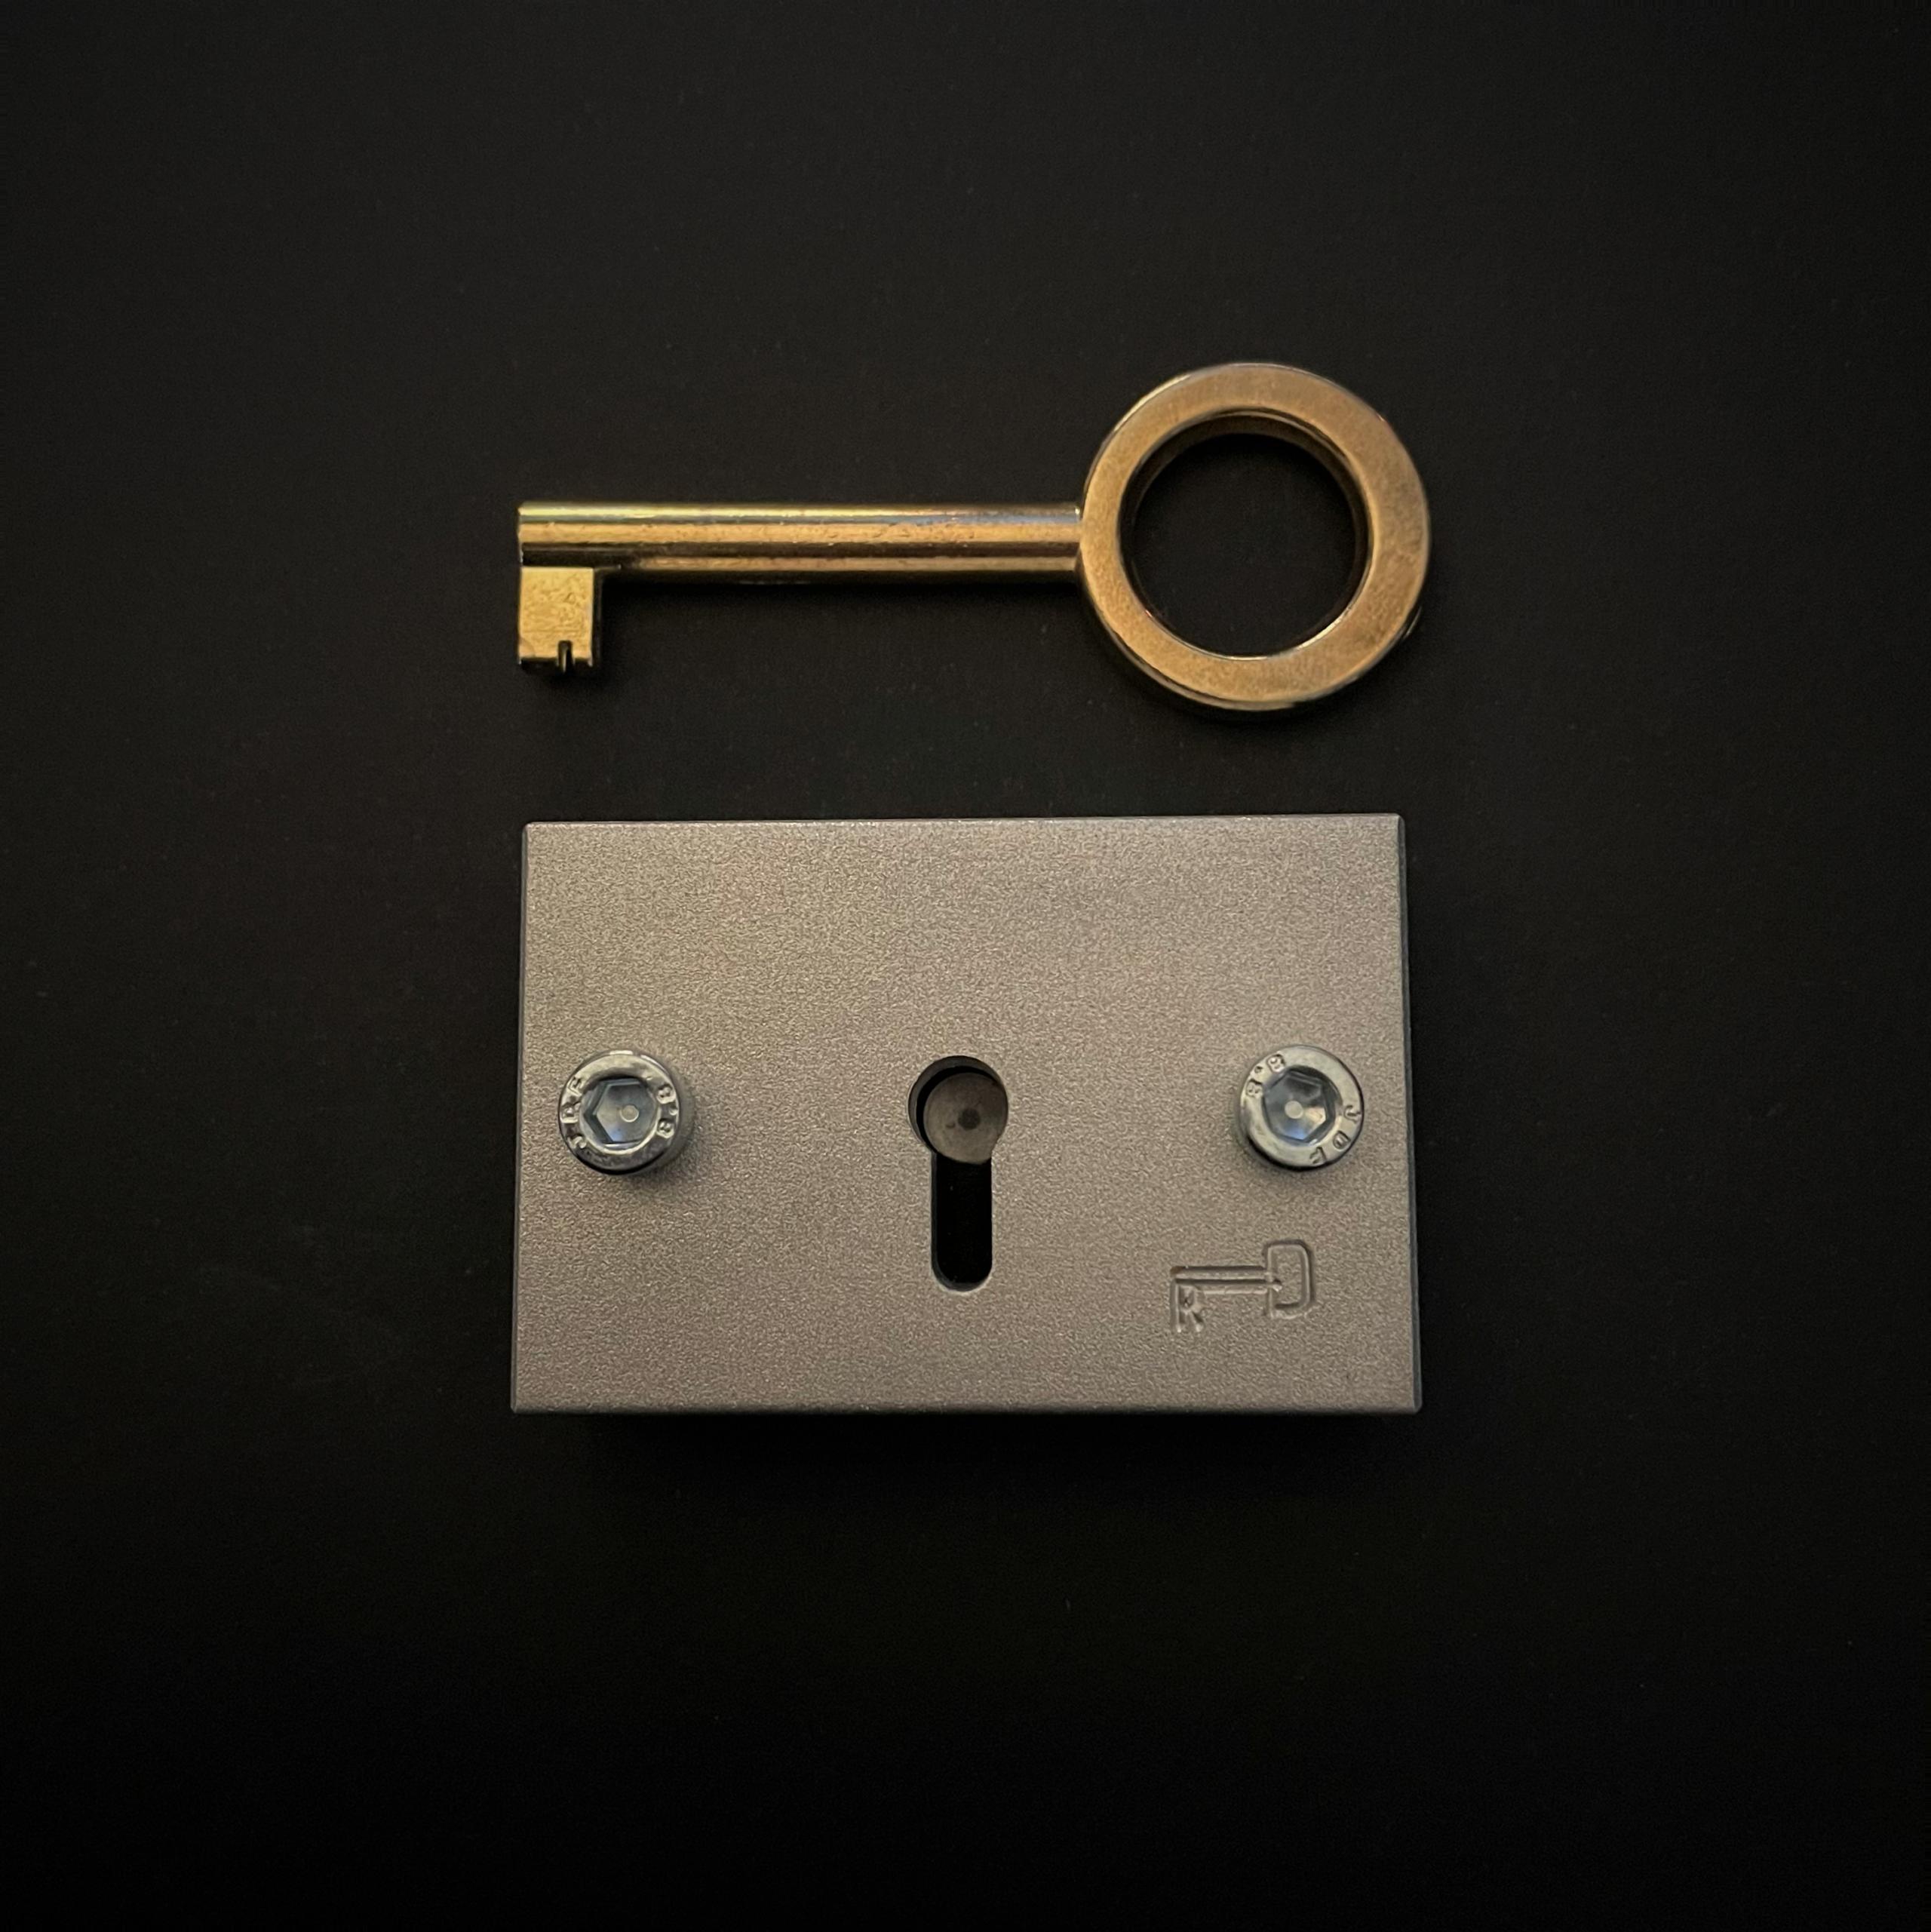 Schlüssel (Key) by Roger D. (RD)